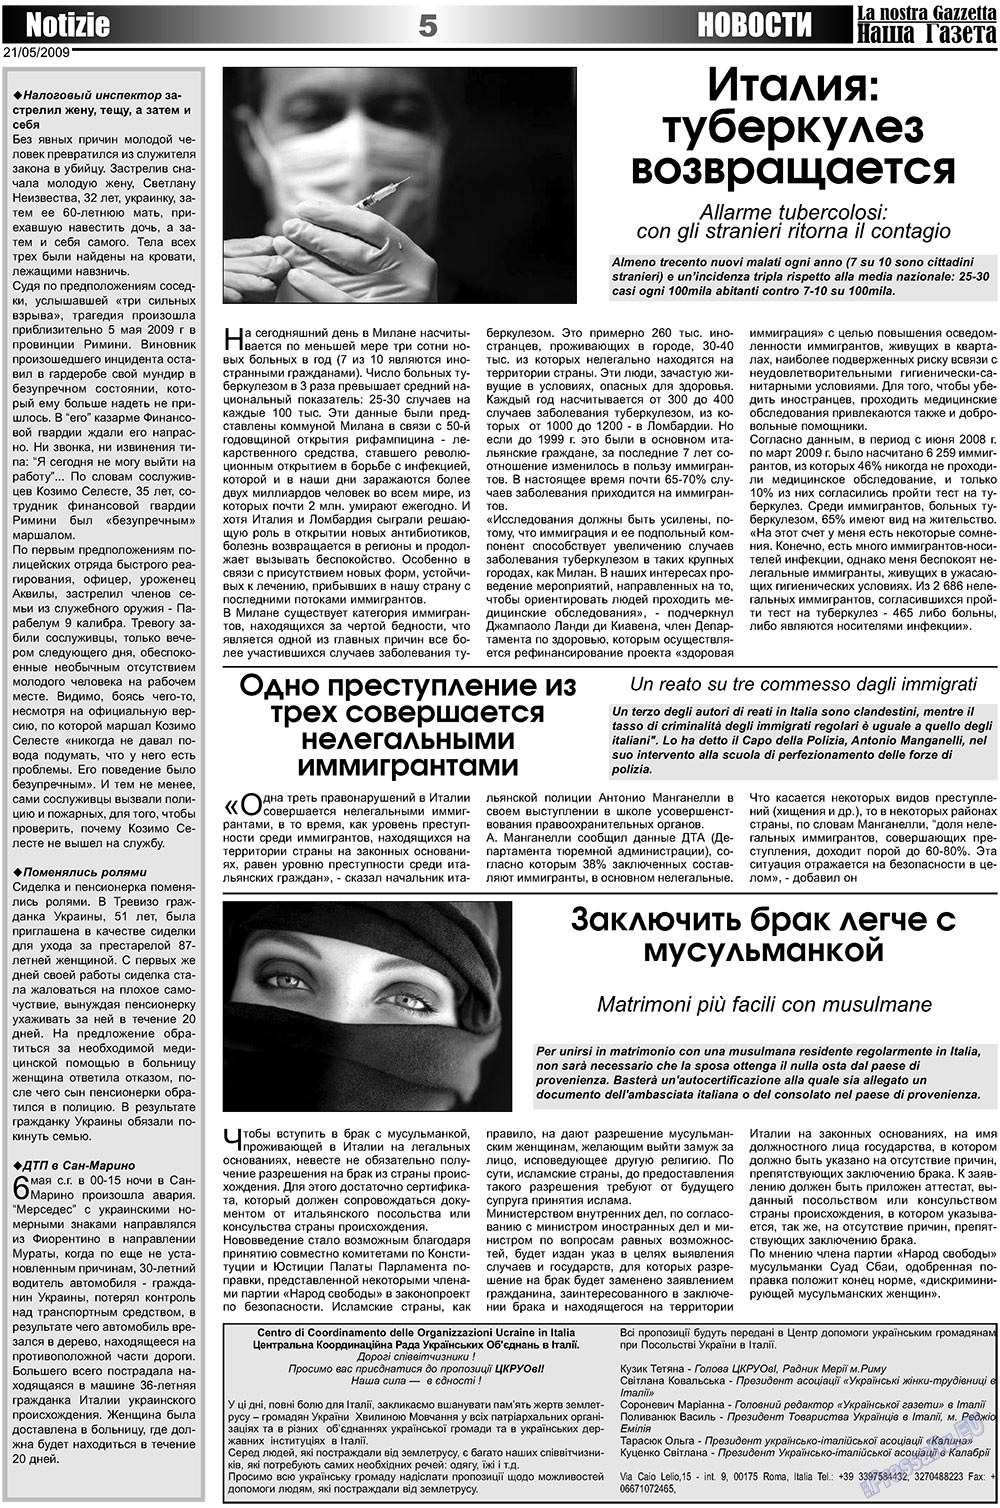 Наша Газета Италия, газета. 2009 №10 стр.5